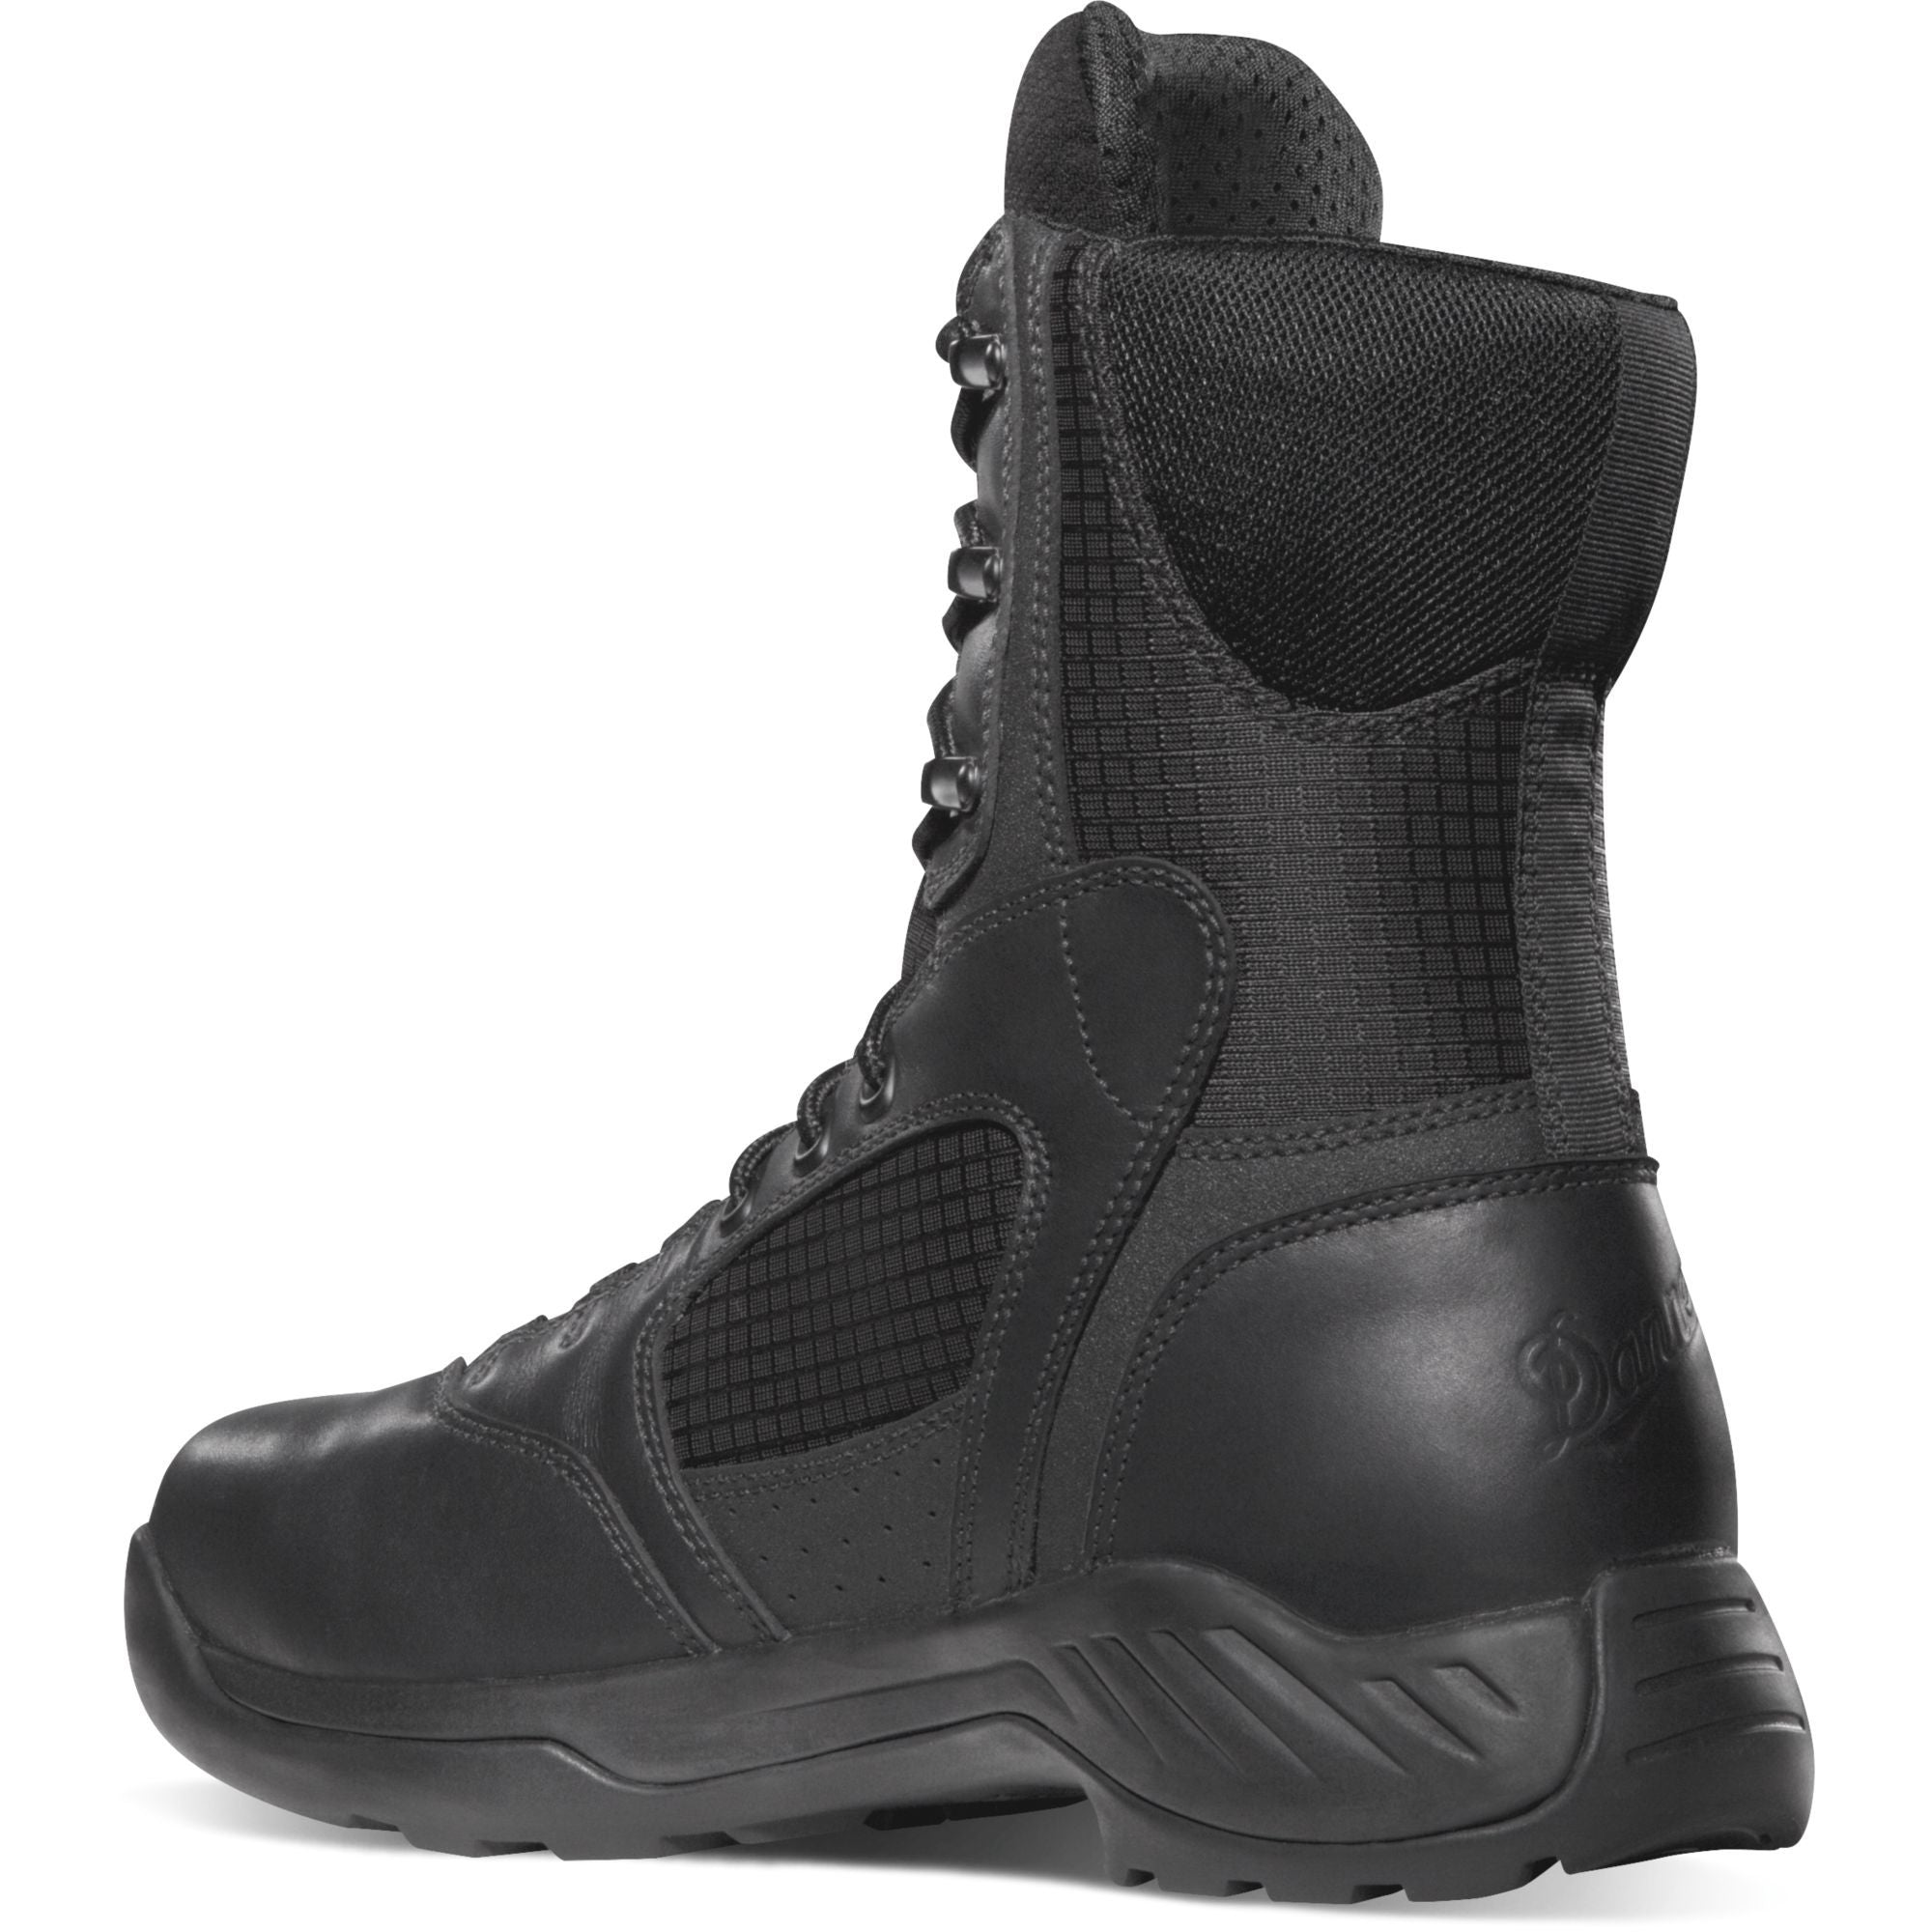 Danner Men's Kinetic 8" Waterproof Duty Boot - Black - 28010  - Overlook Boots